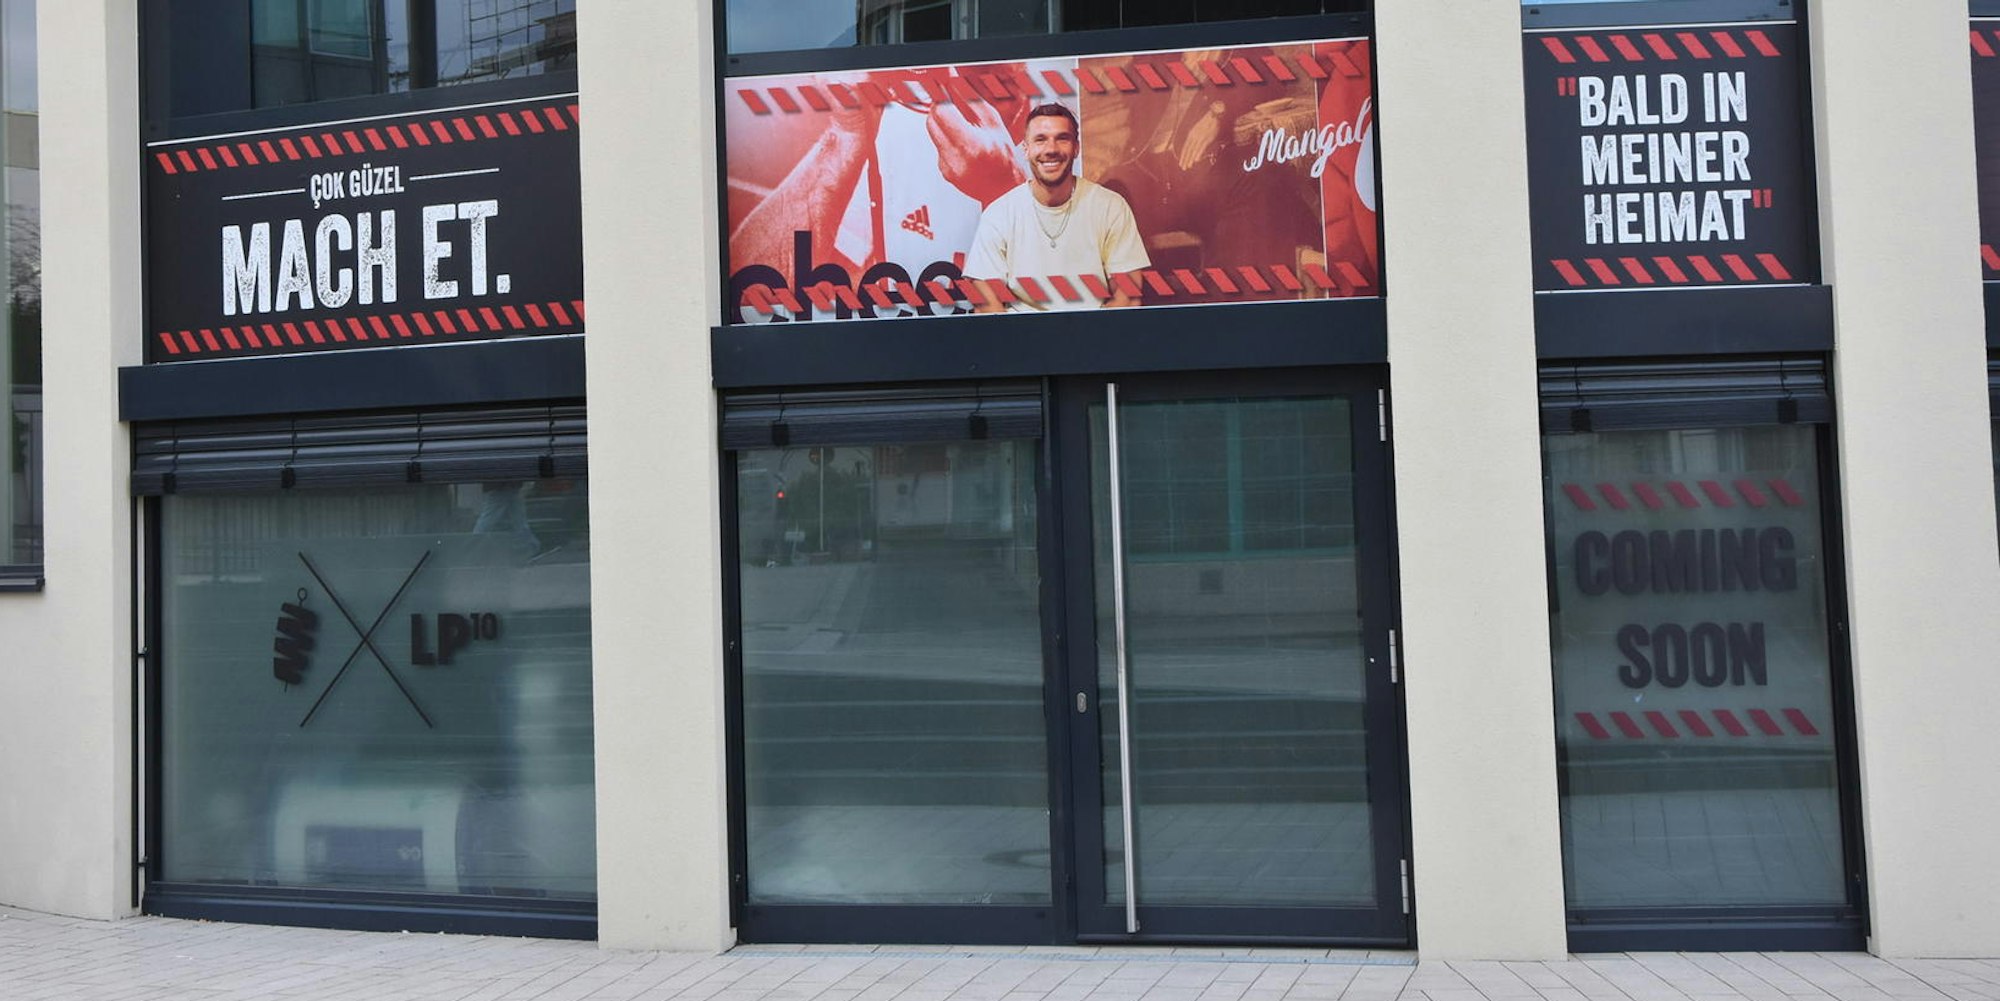 Eine Filiale seiner türkischen Restaurant-Kette Mangal will Lukas Podolski bald in seiner Heimat eröffnen.